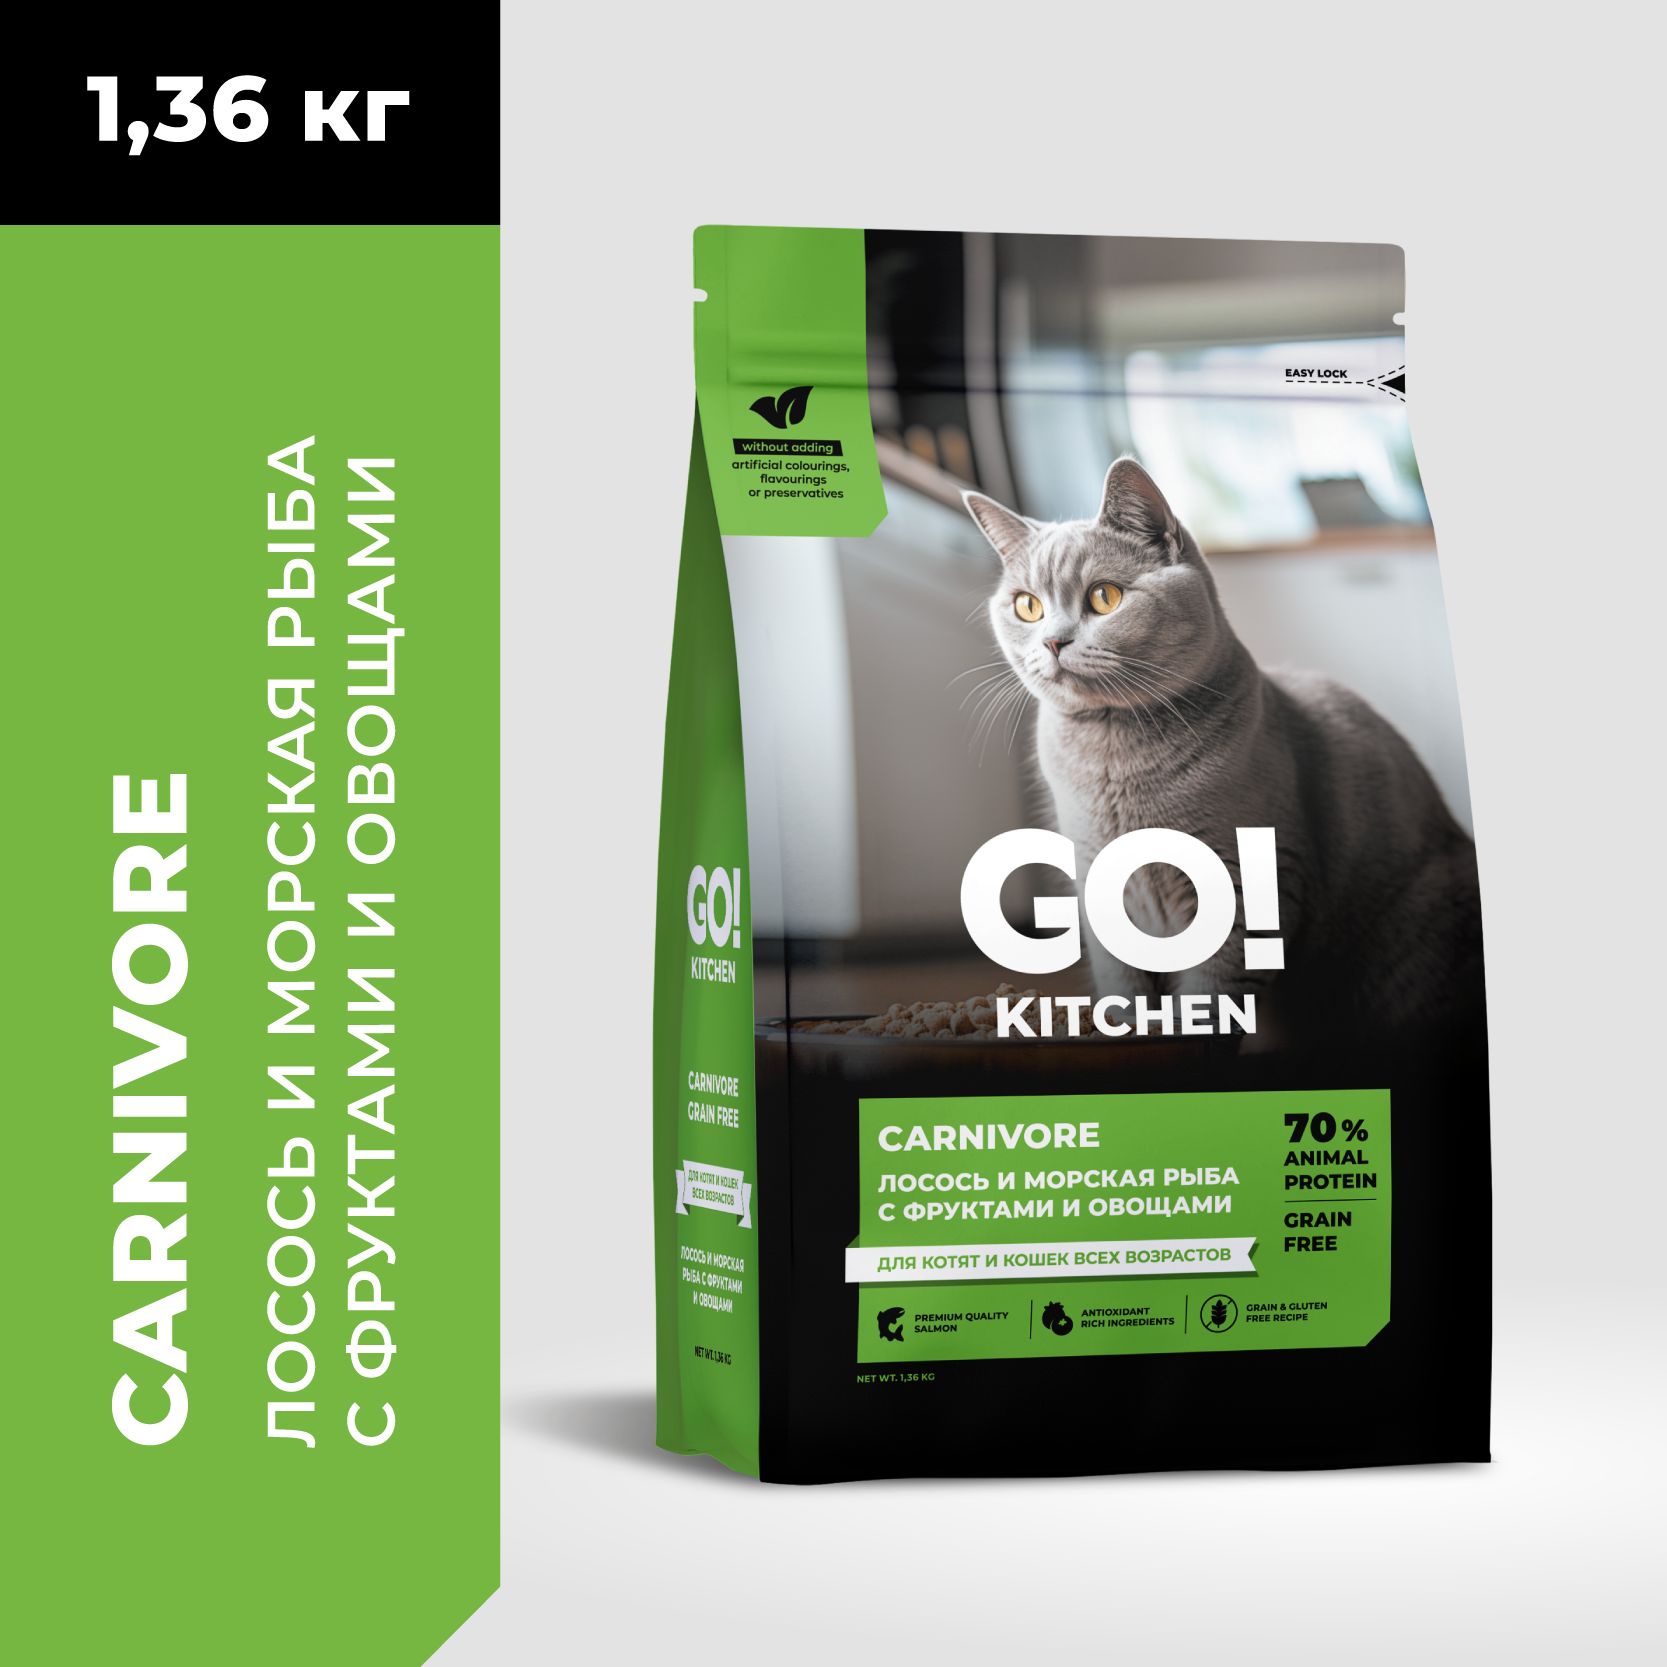 GO!KitchenCarnivoreGrainFree-Беззерновойкормдлякотятикошексчувствительнымпищеварением,слососемиморскойрыбой(1,36кг)